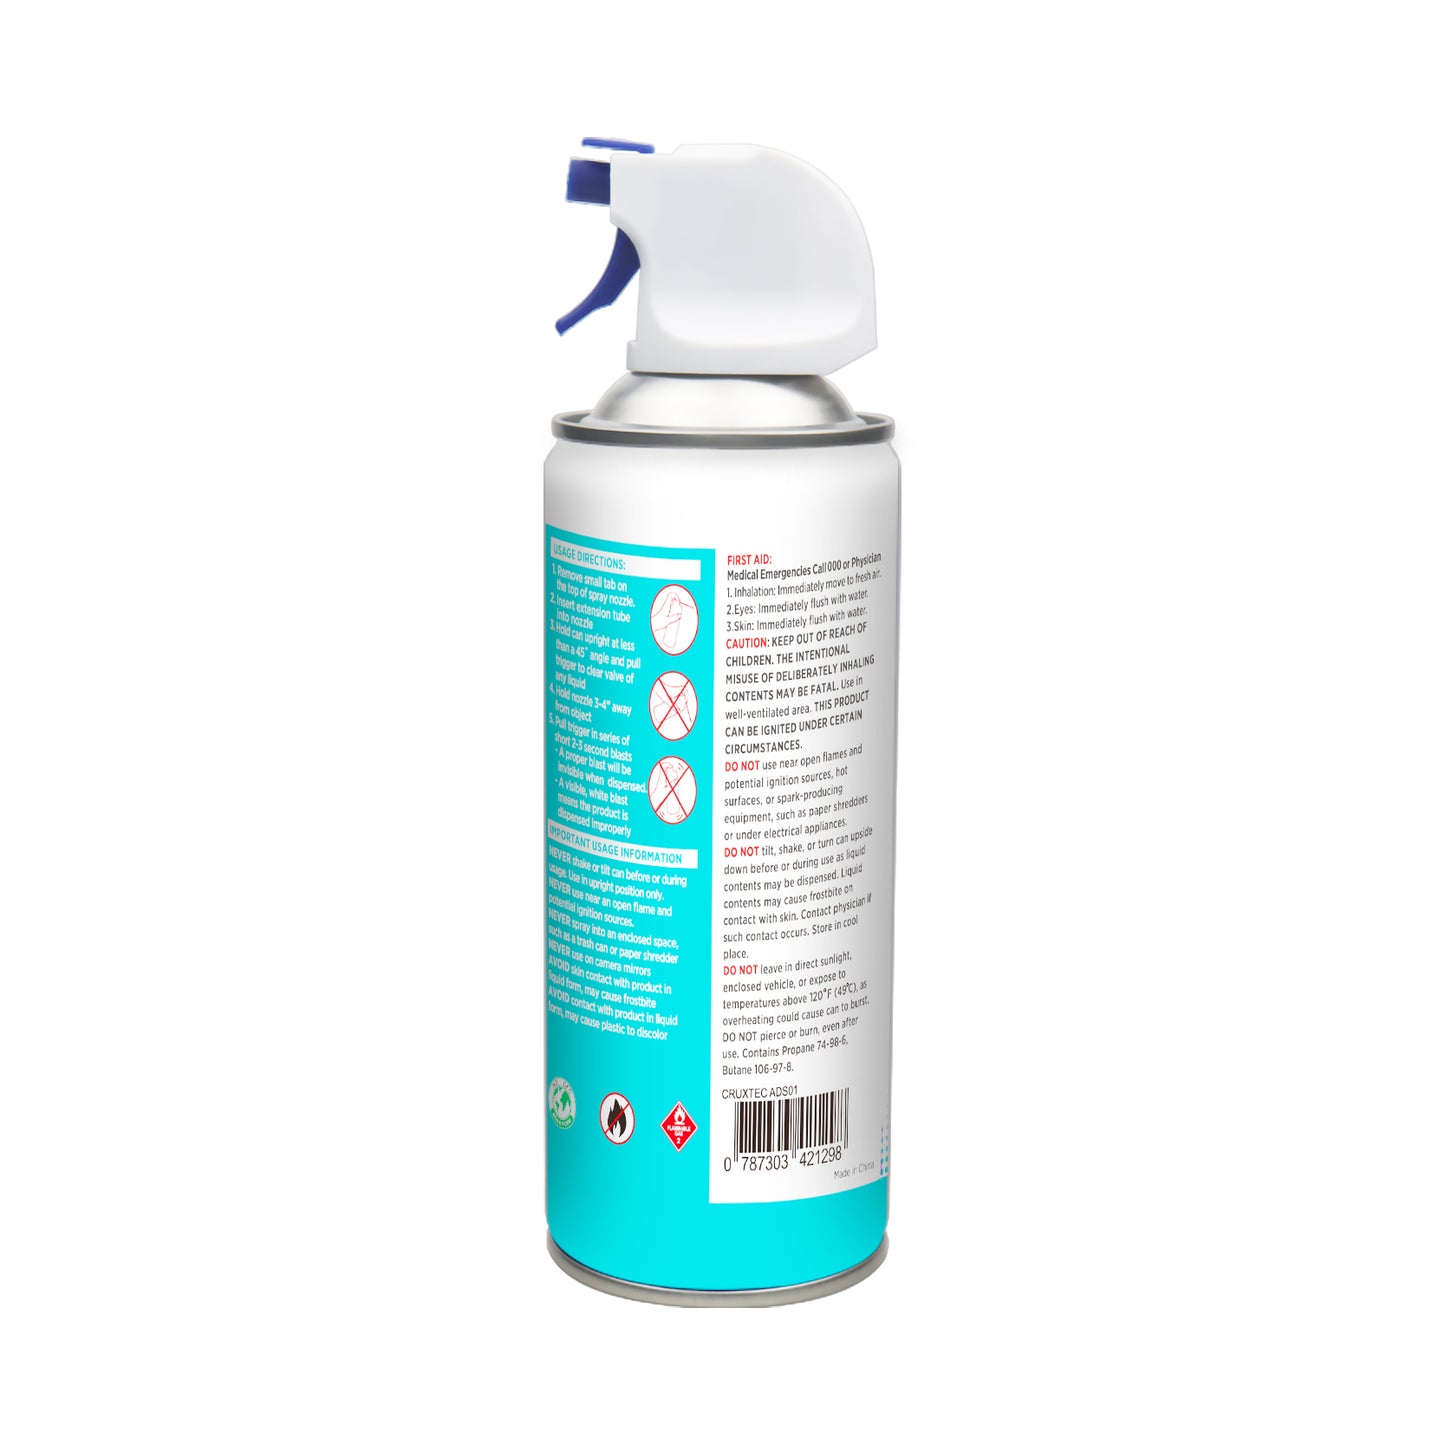 CRUXTEC ADS01 Air Duster Spray 400ml